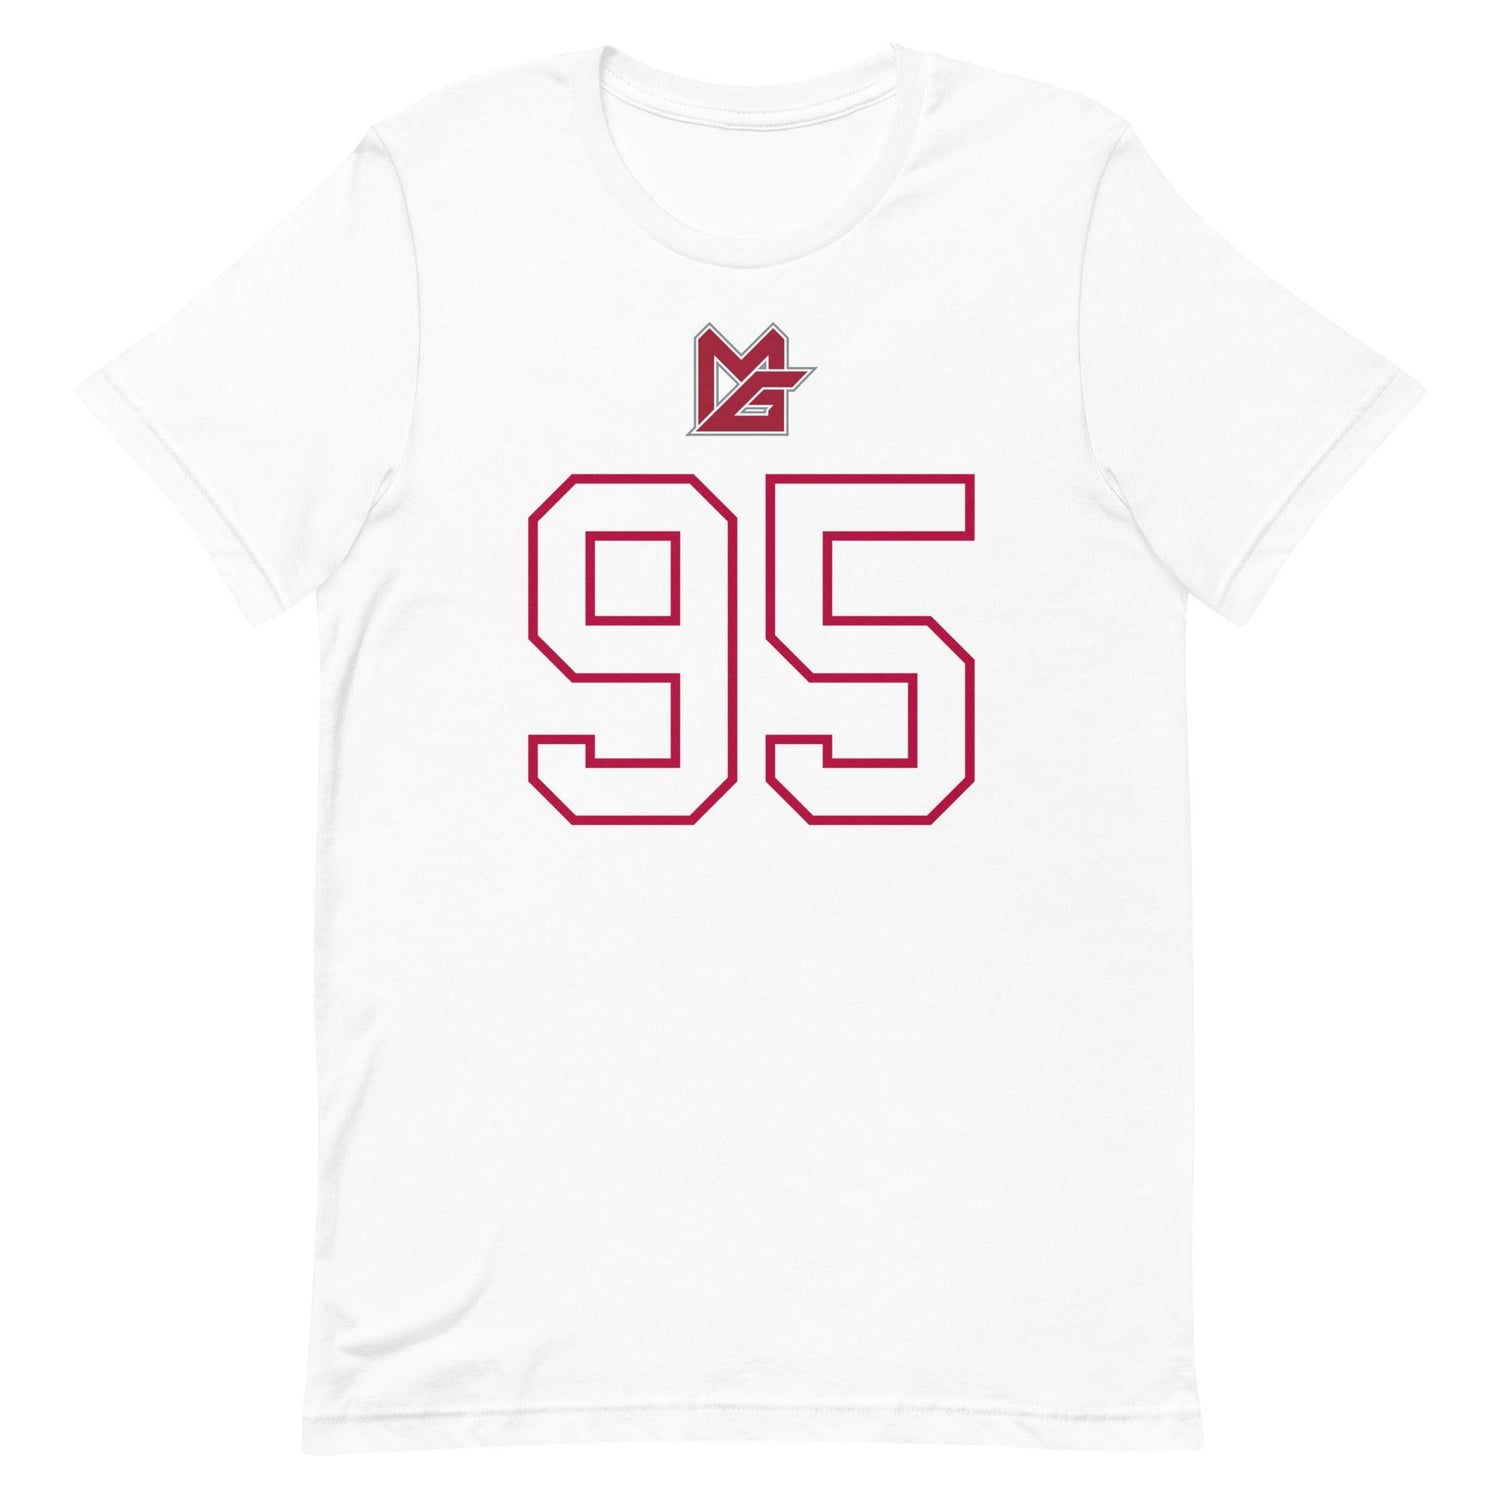 Monkell Goodwine  "Jersey" t-shirt - Fan Arch